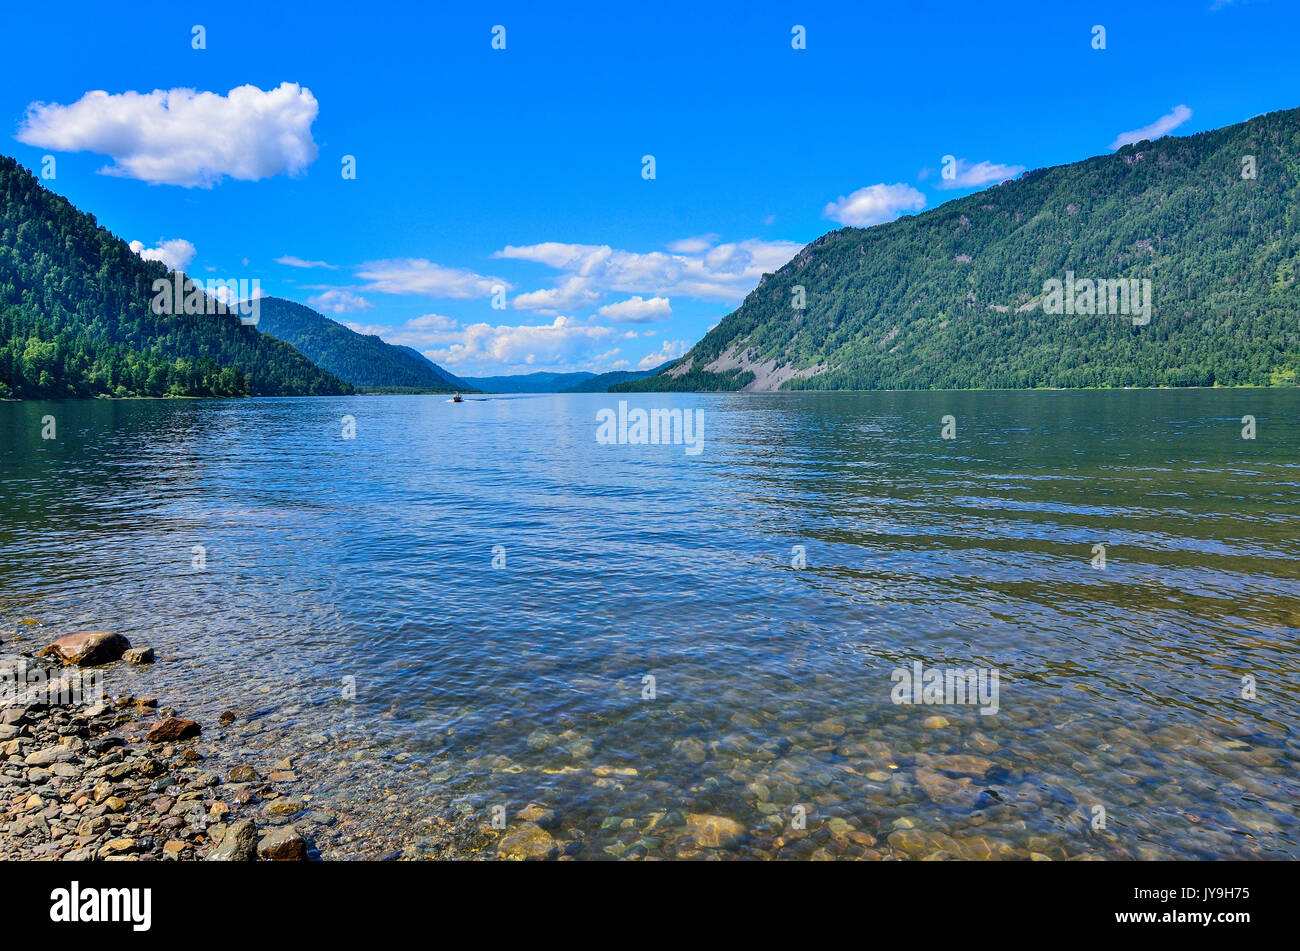 L'eau la plus propre de Teletskoye transparent ou Golden lake. Montagnes de l'Altaï paysage estival, Russie Banque D'Images